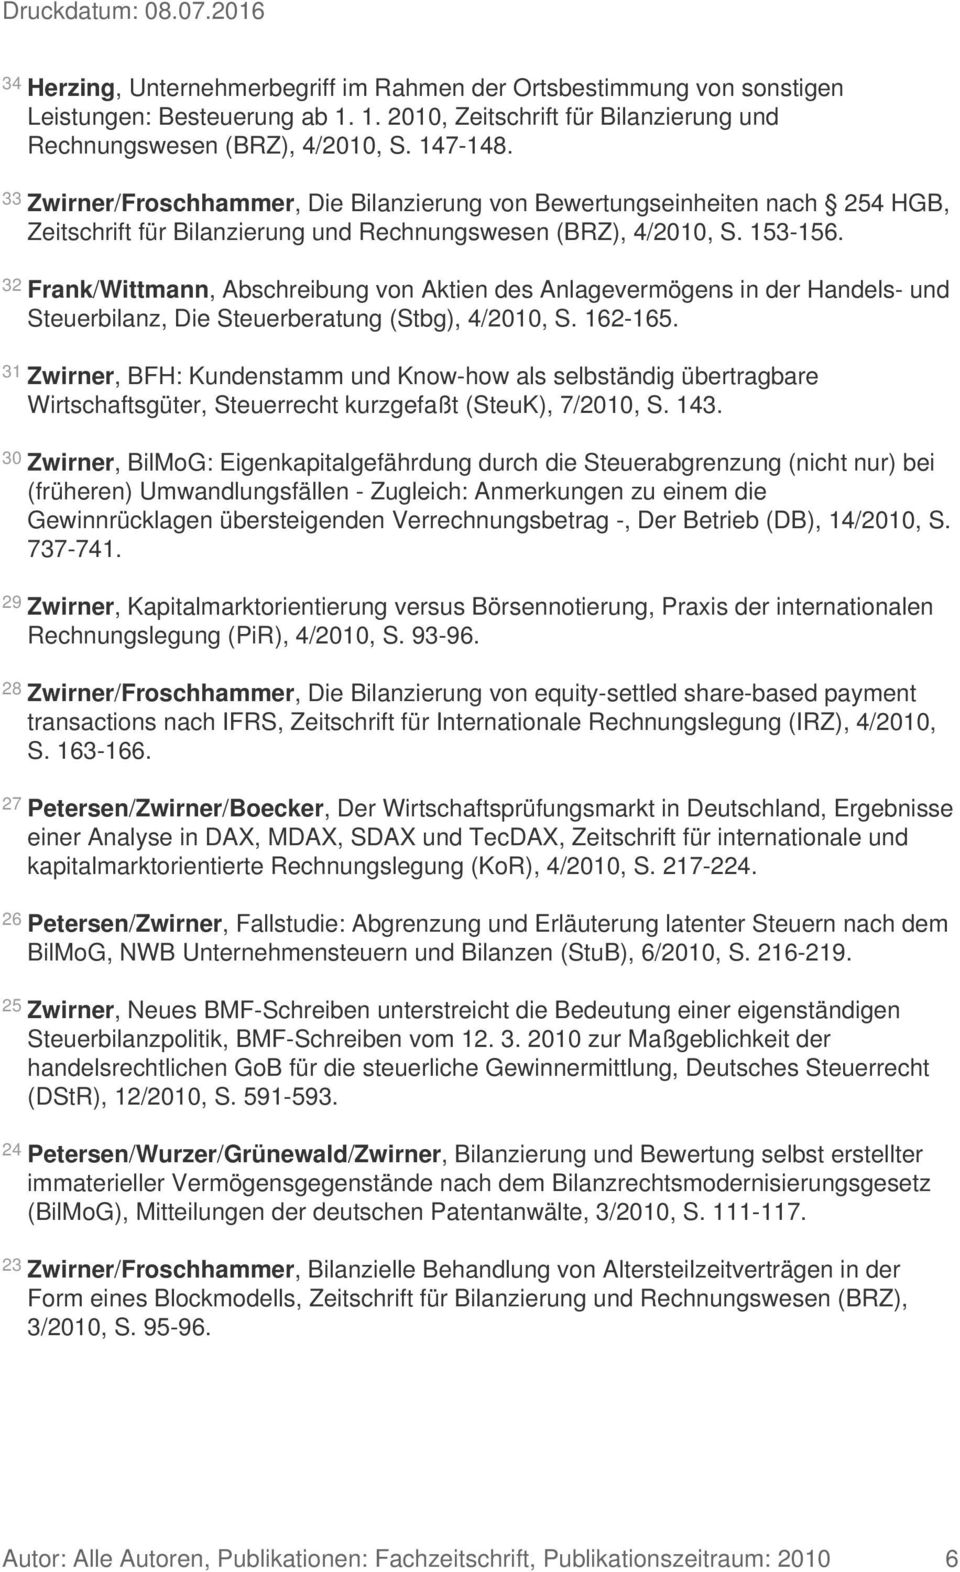 32 Frank/Wittmann, Abschreibung von Aktien des Anlagevermögens in der Handels- und Steuerbilanz, Die Steuerberatung (Stbg), 4/2010, S. 162-165.